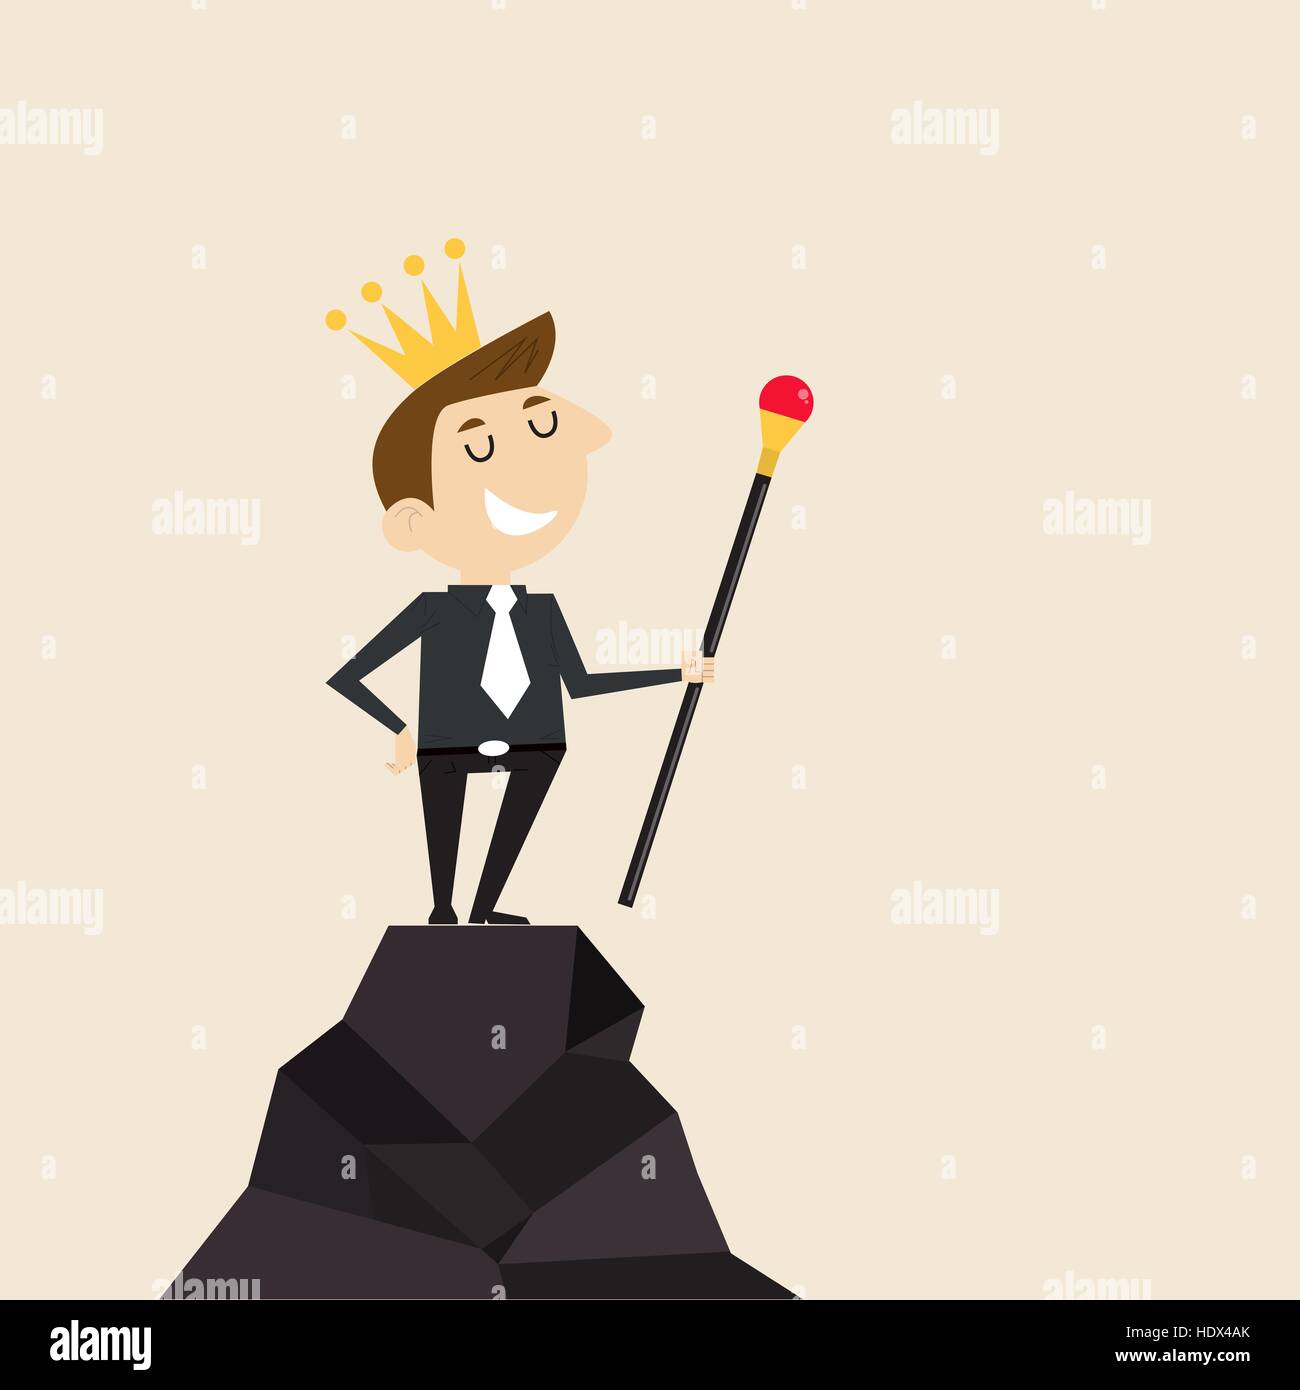 Manager, employée de bureau ou homme debout sur le sommet de la montagne et de tenir le sceptre dans sa main avec la couronne sur sa tête. Notion d'entreprise Illustration de Vecteur